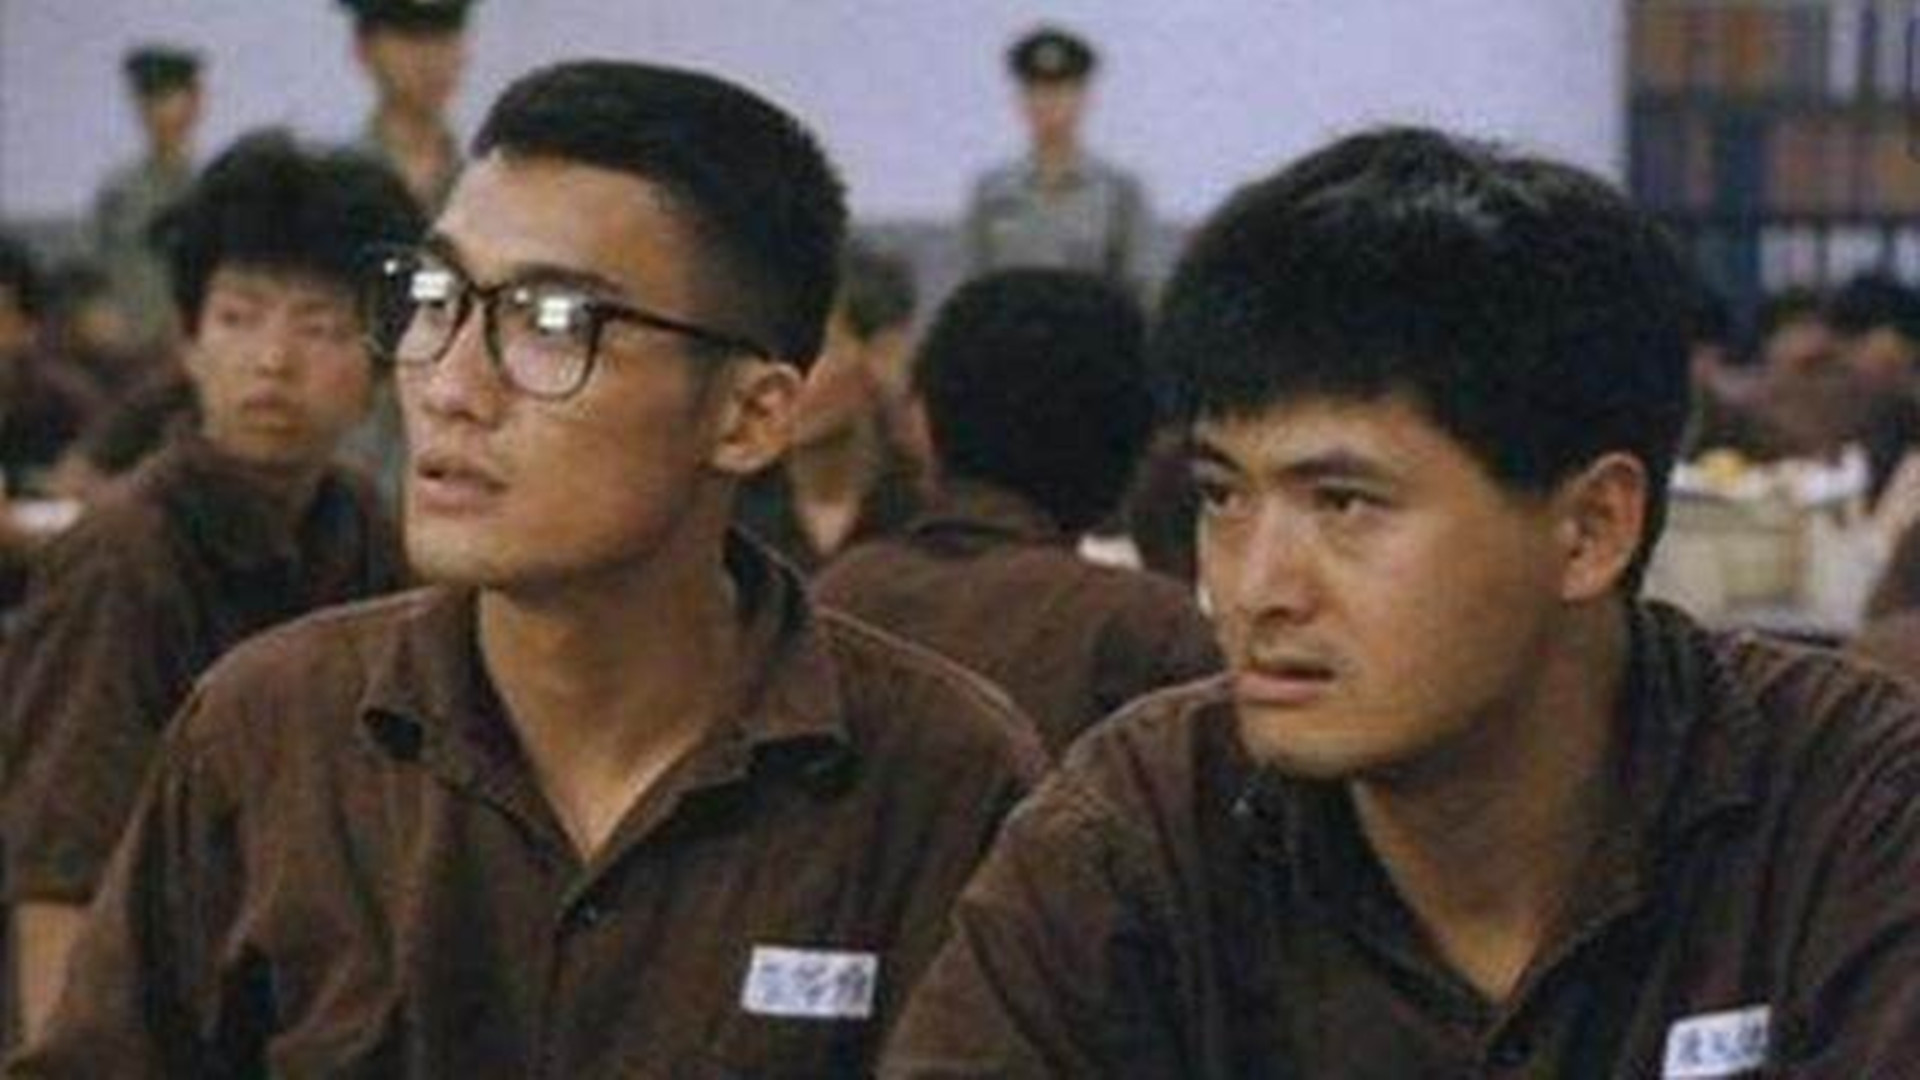 1987年,梁家辉和周润发主演动作电影《监狱风云》,这部影片讲述了监狱